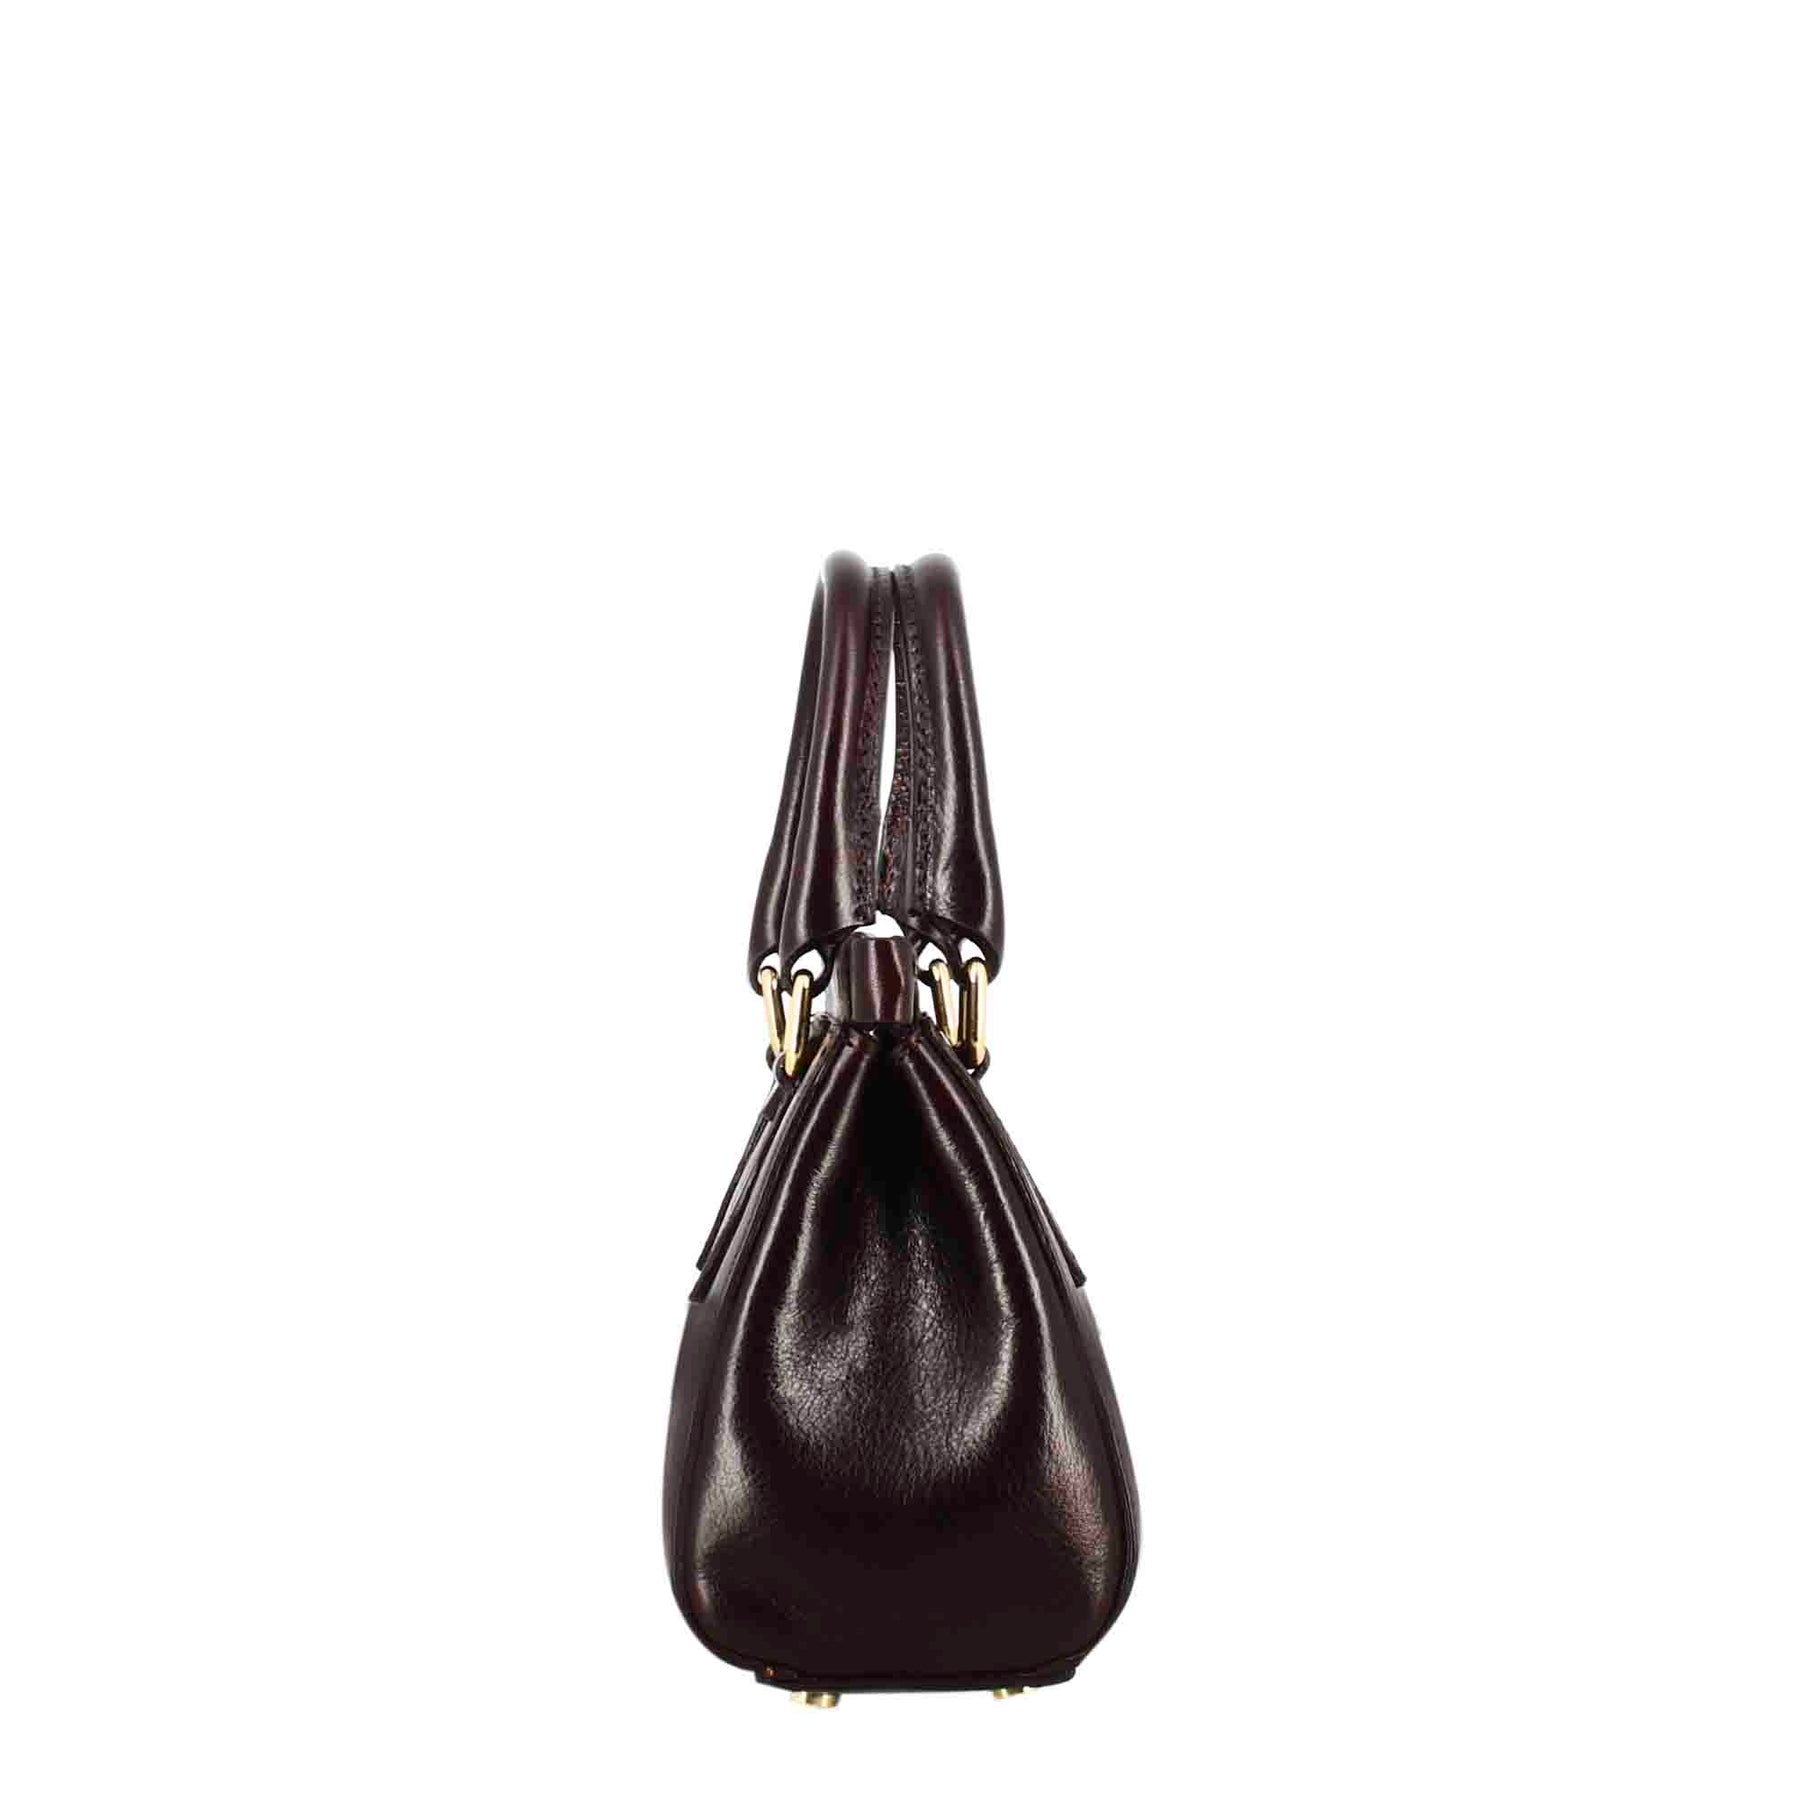 Fiorenza Lederhandtasche mit abnehmbarem Schulterriemen, Farbe dunkelbraun